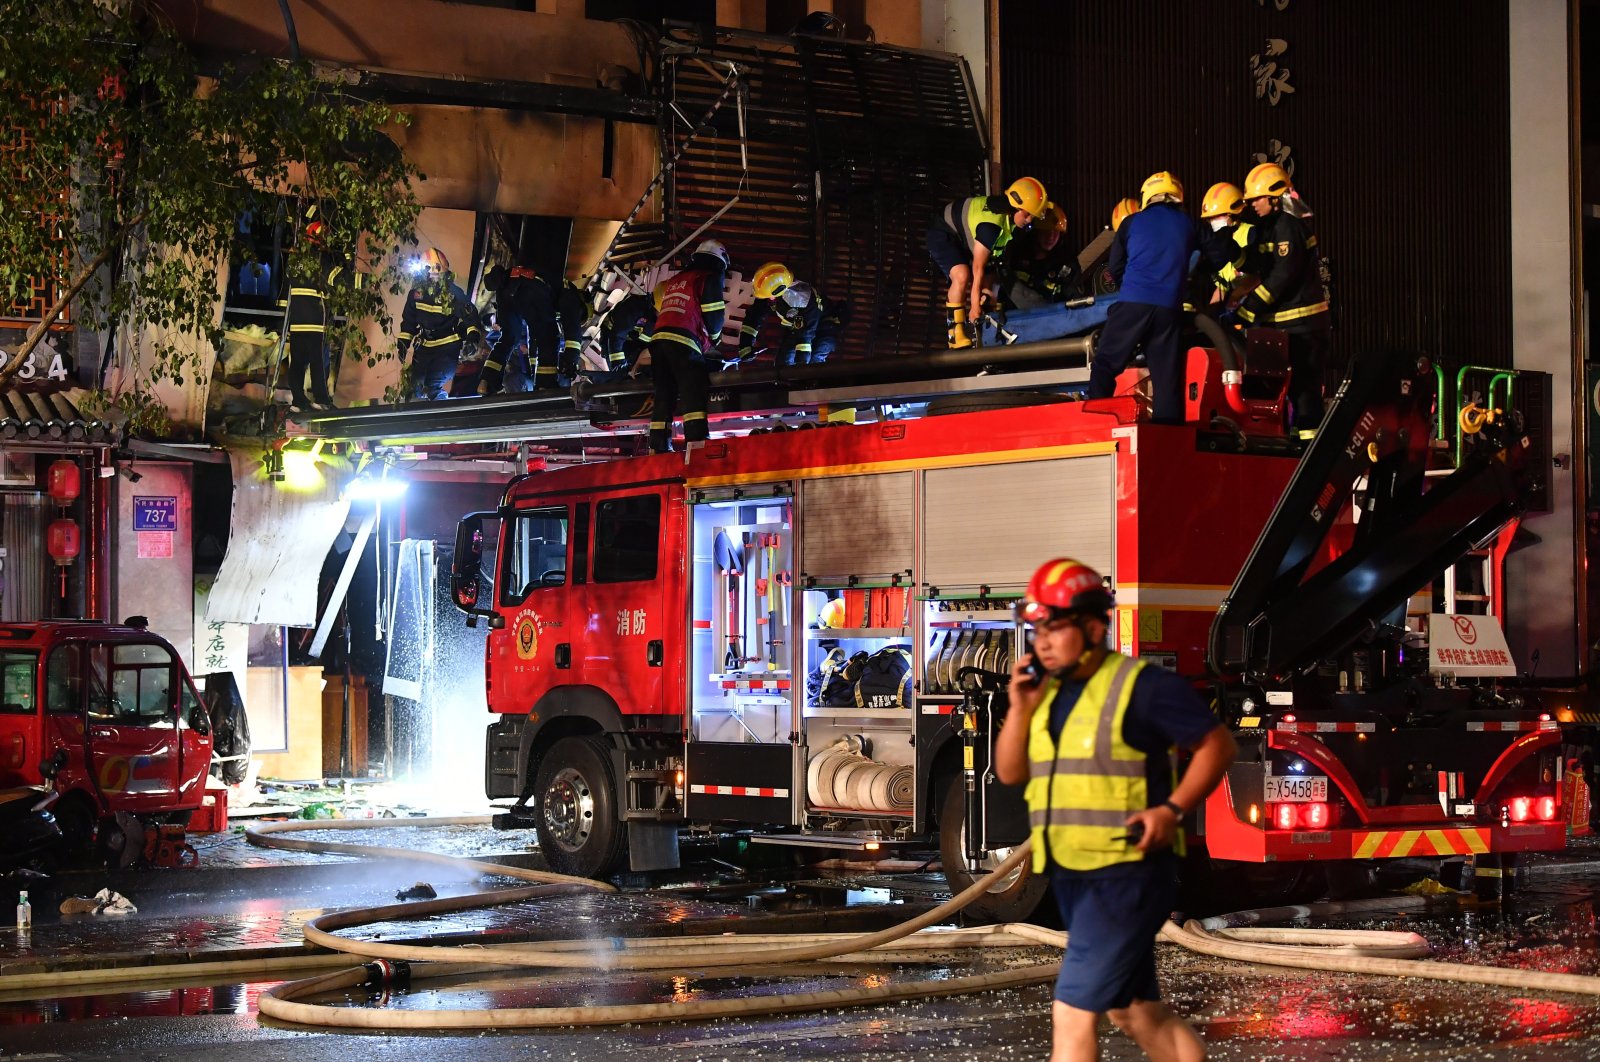 Ledakan gas memasak di restoran China BBQ menewaskan sedikitnya 31 orang